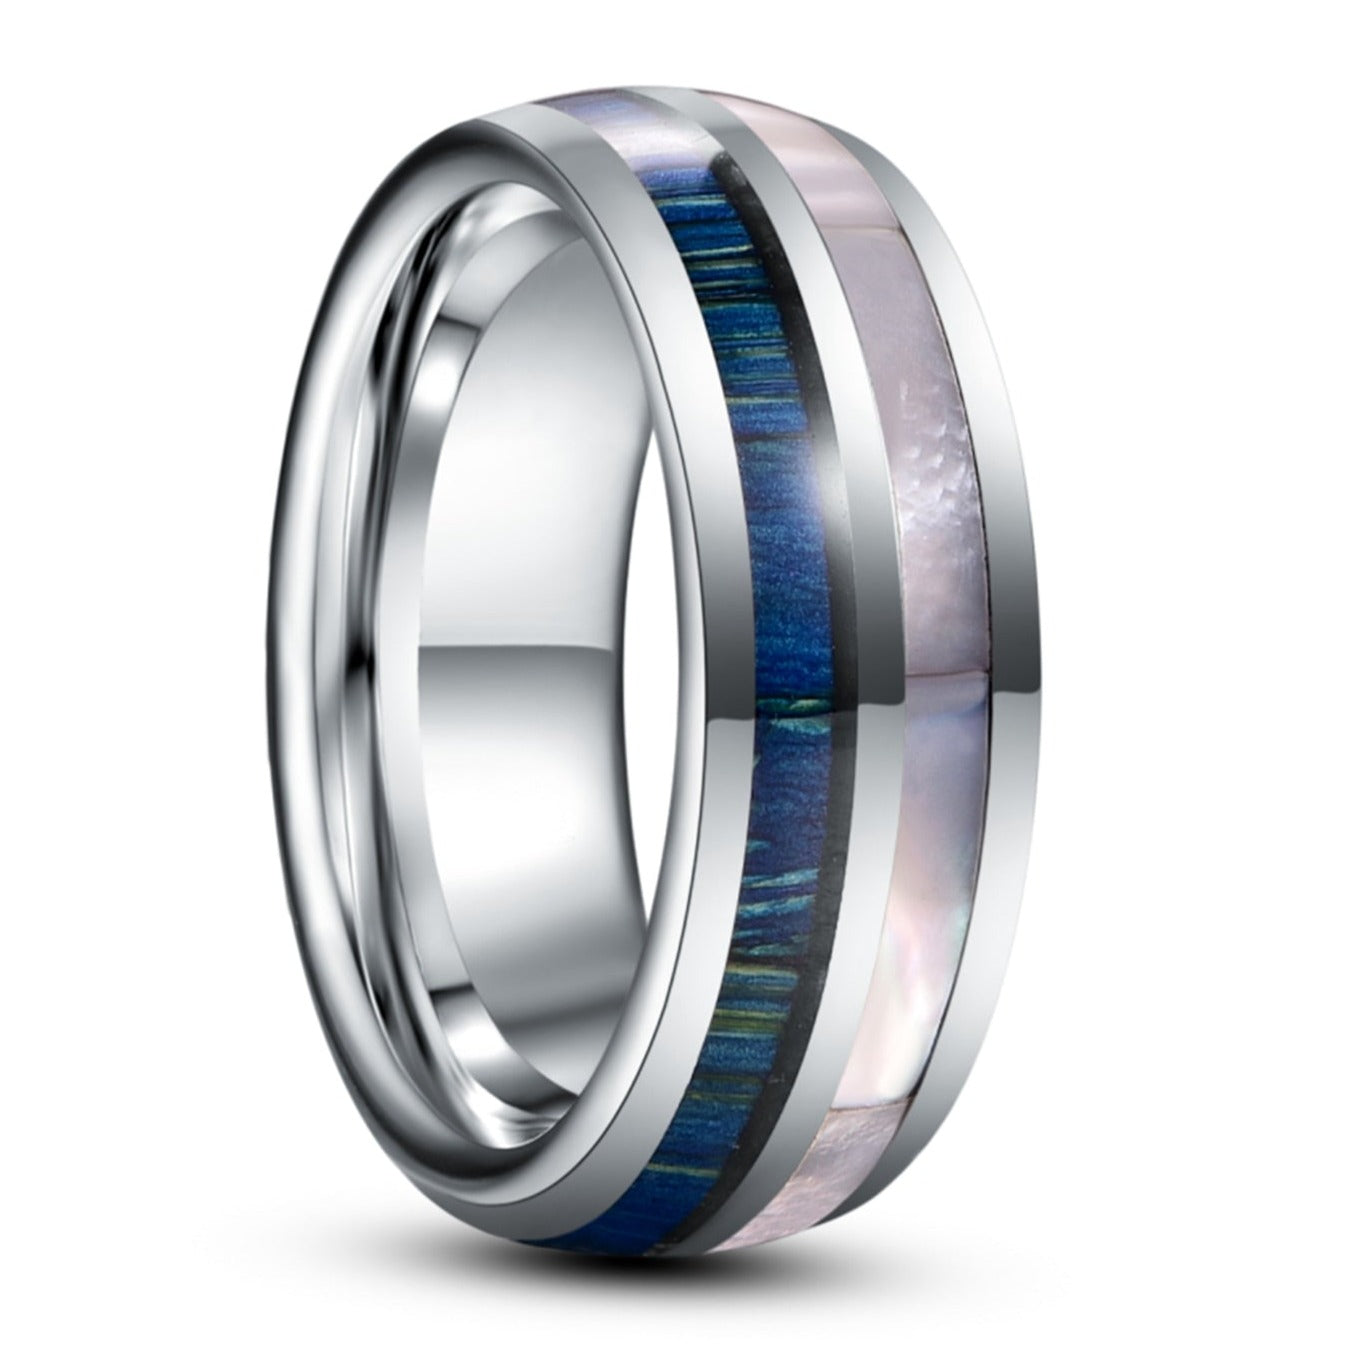 8mm Blue Wood Grain & White Shell Tungsten Men's Ring